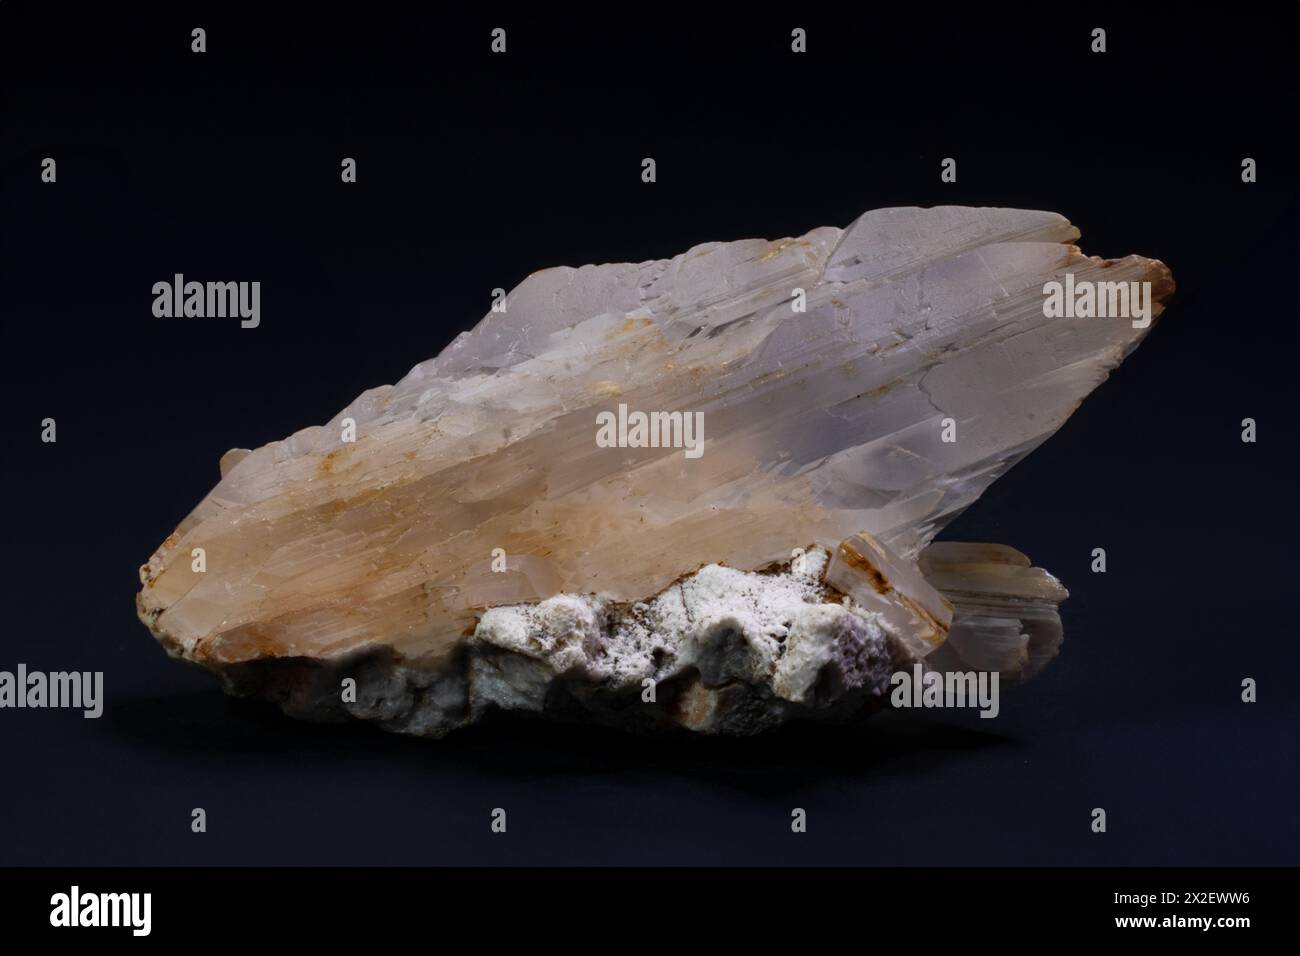 Spécimen minéral de cristal de gypse, photographie étonnante Banque D'Images